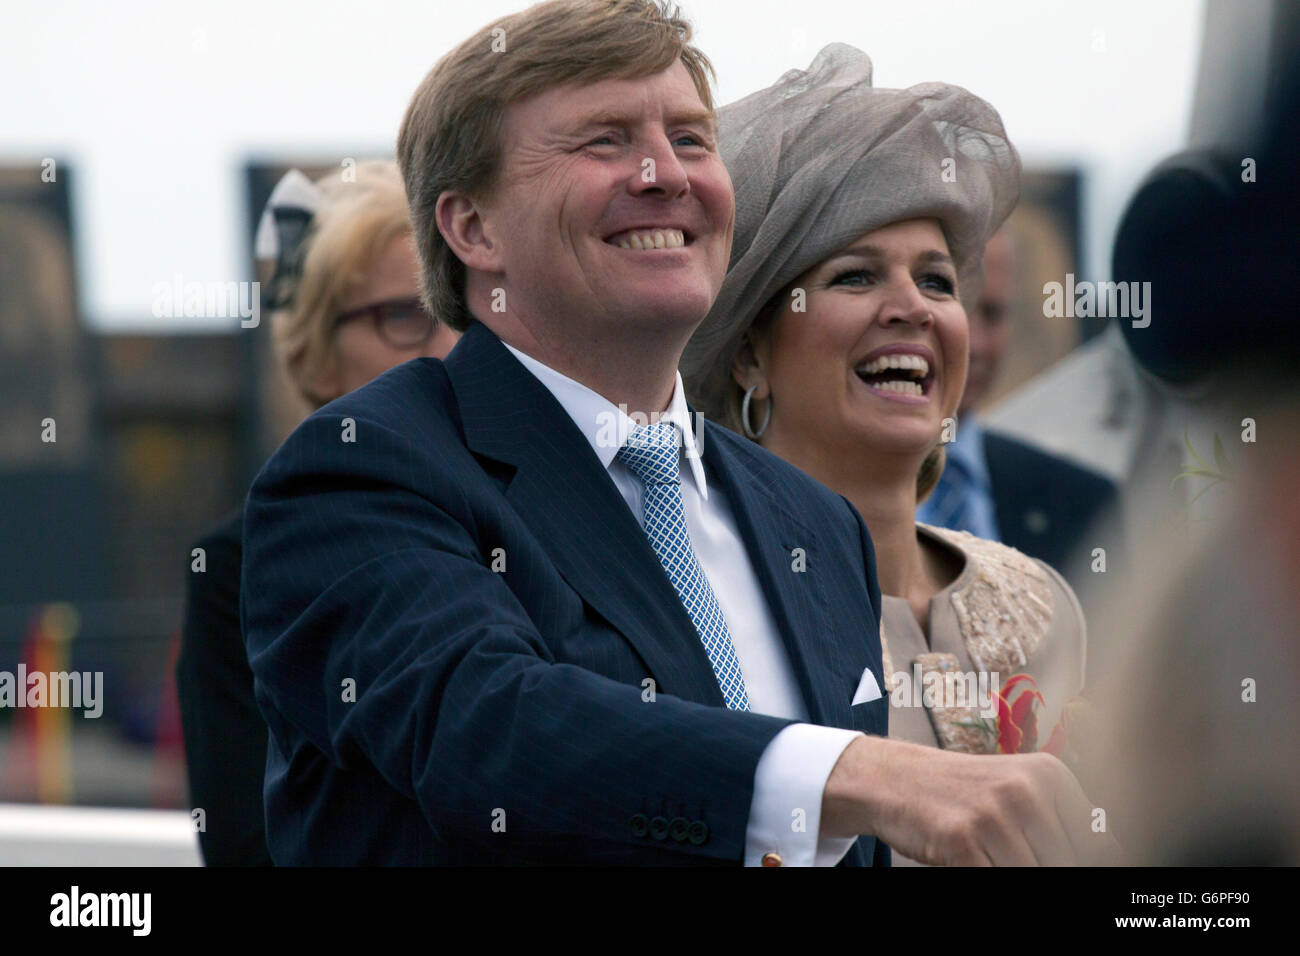 Enkhuizen, Países Bajos - Junio 14, 2013: la reina y el rey w illem maxima Alexander, de los Países Bajos durante una introdu oficial Foto de stock